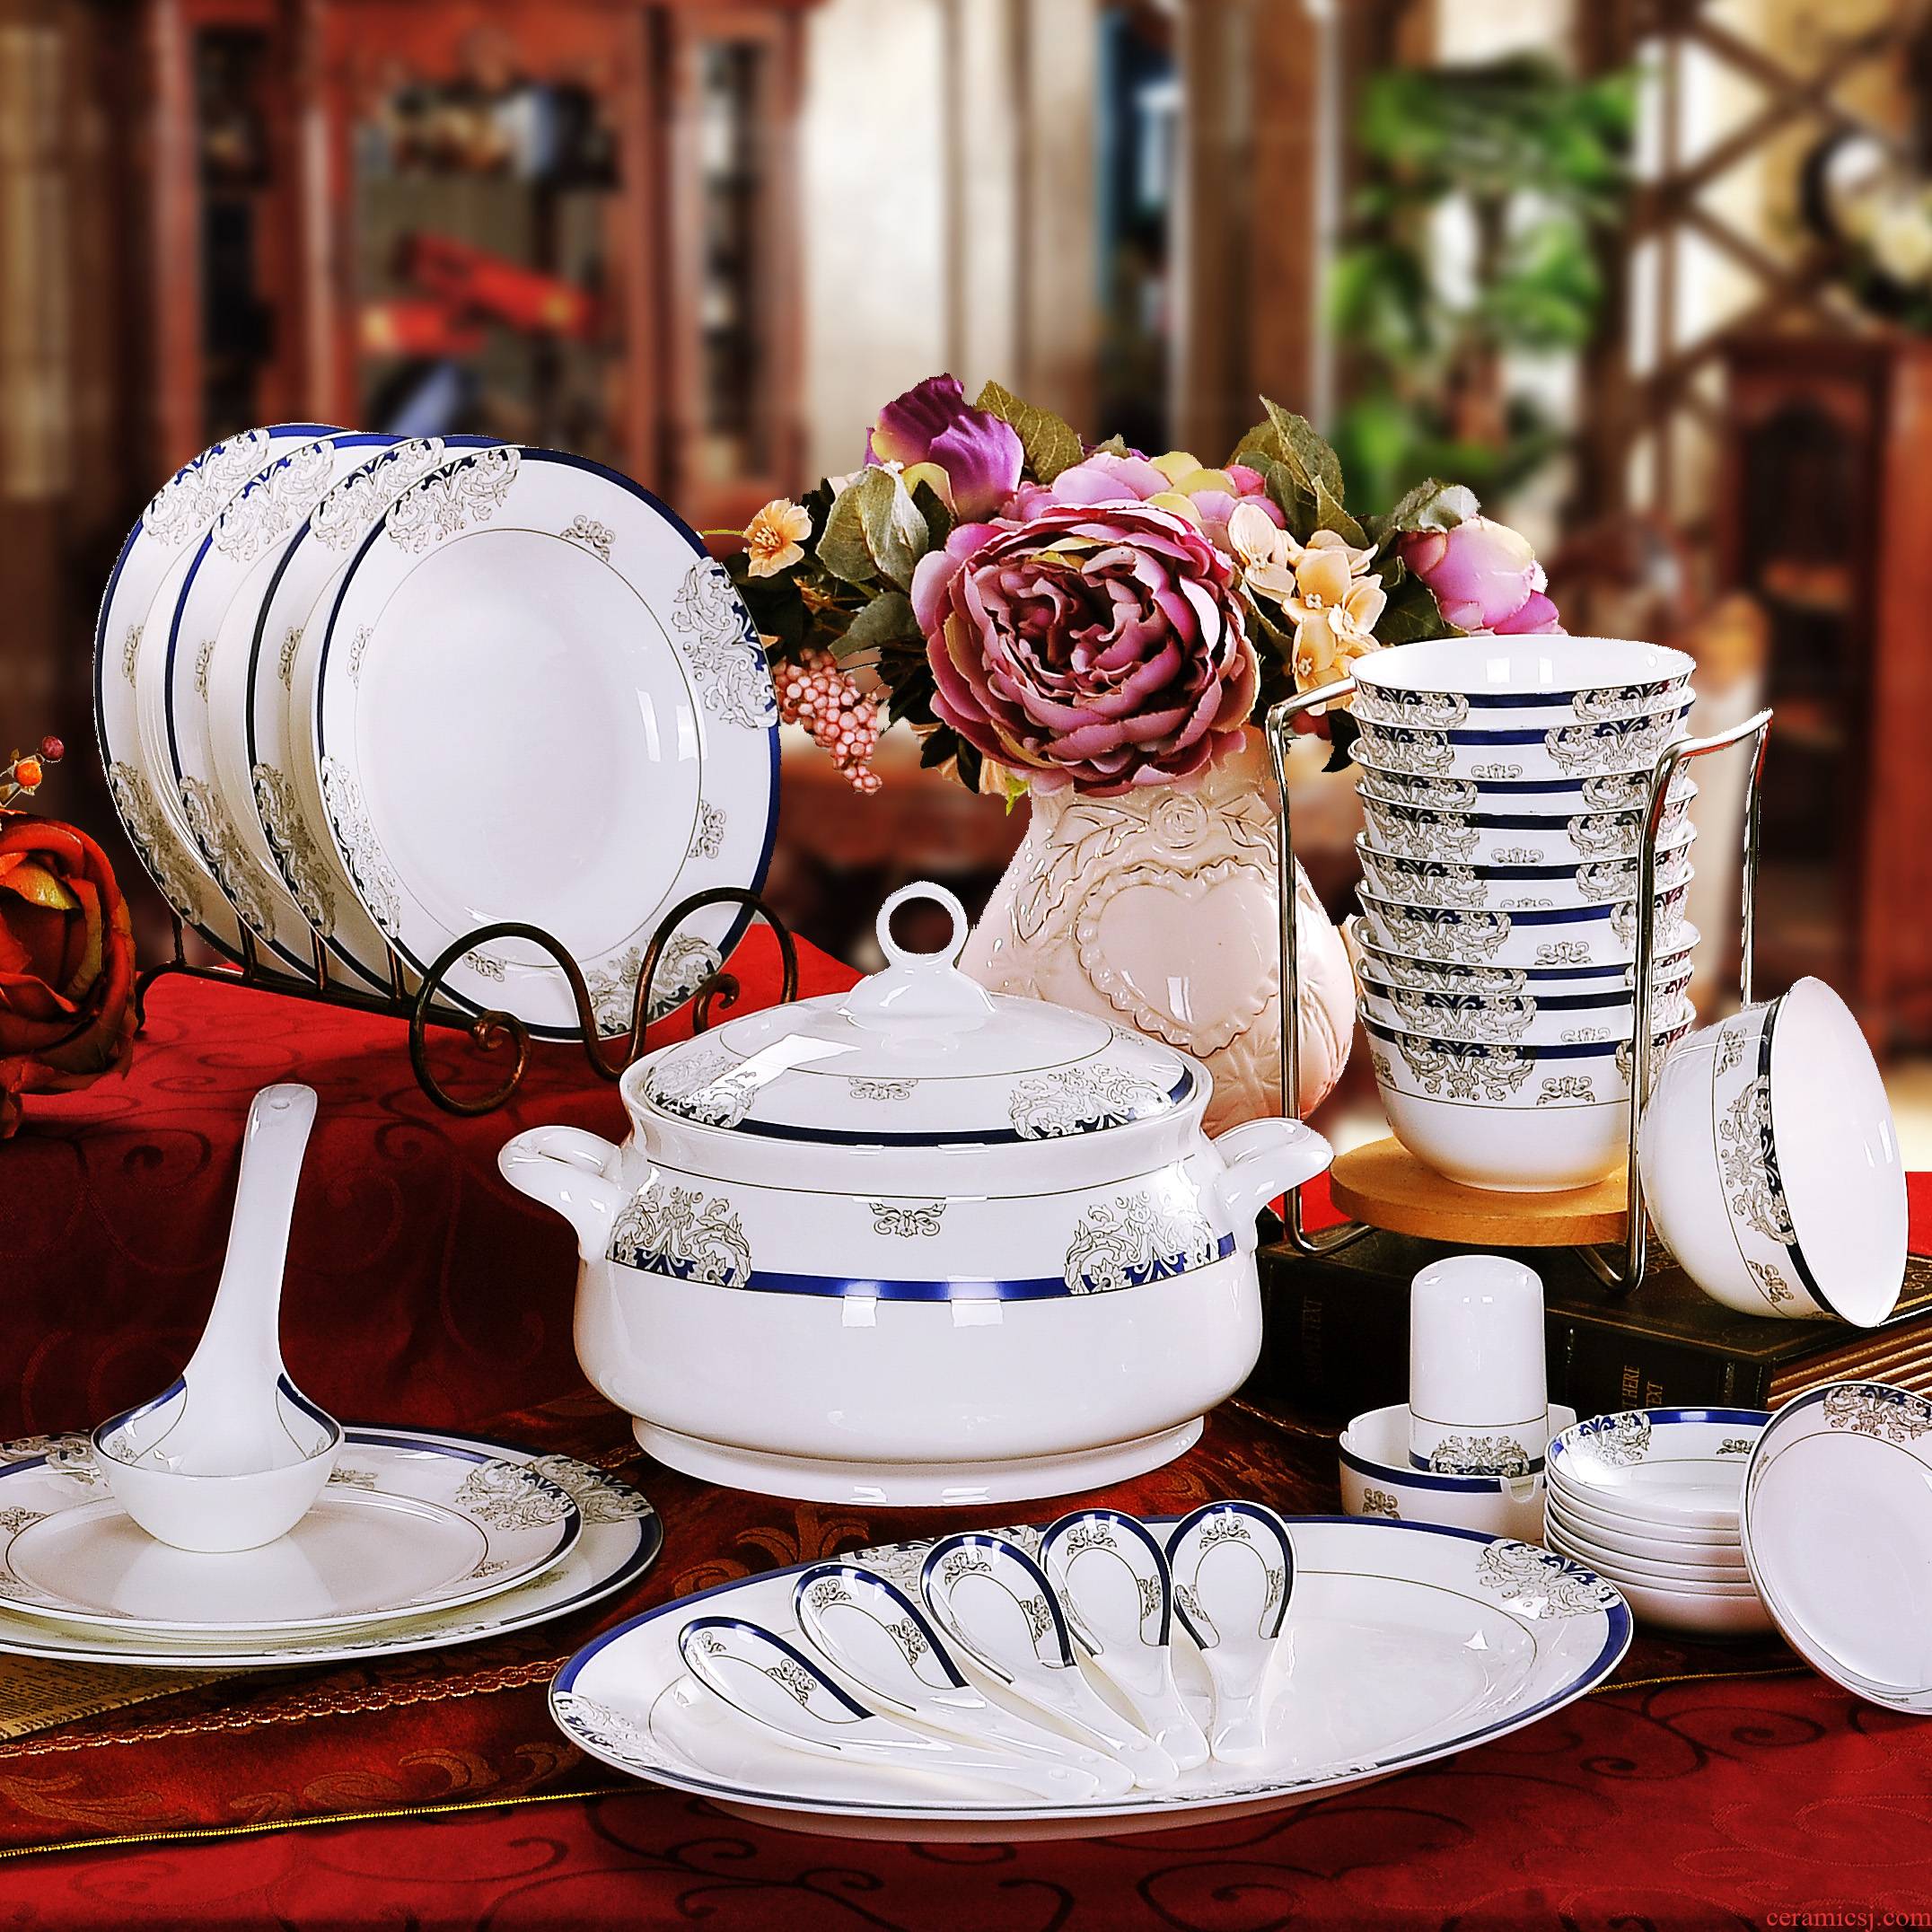 56 the head authentic ipads porcelain bowl suit of jingdezhen ceramics cutlery set bowl plate housewarming gift set